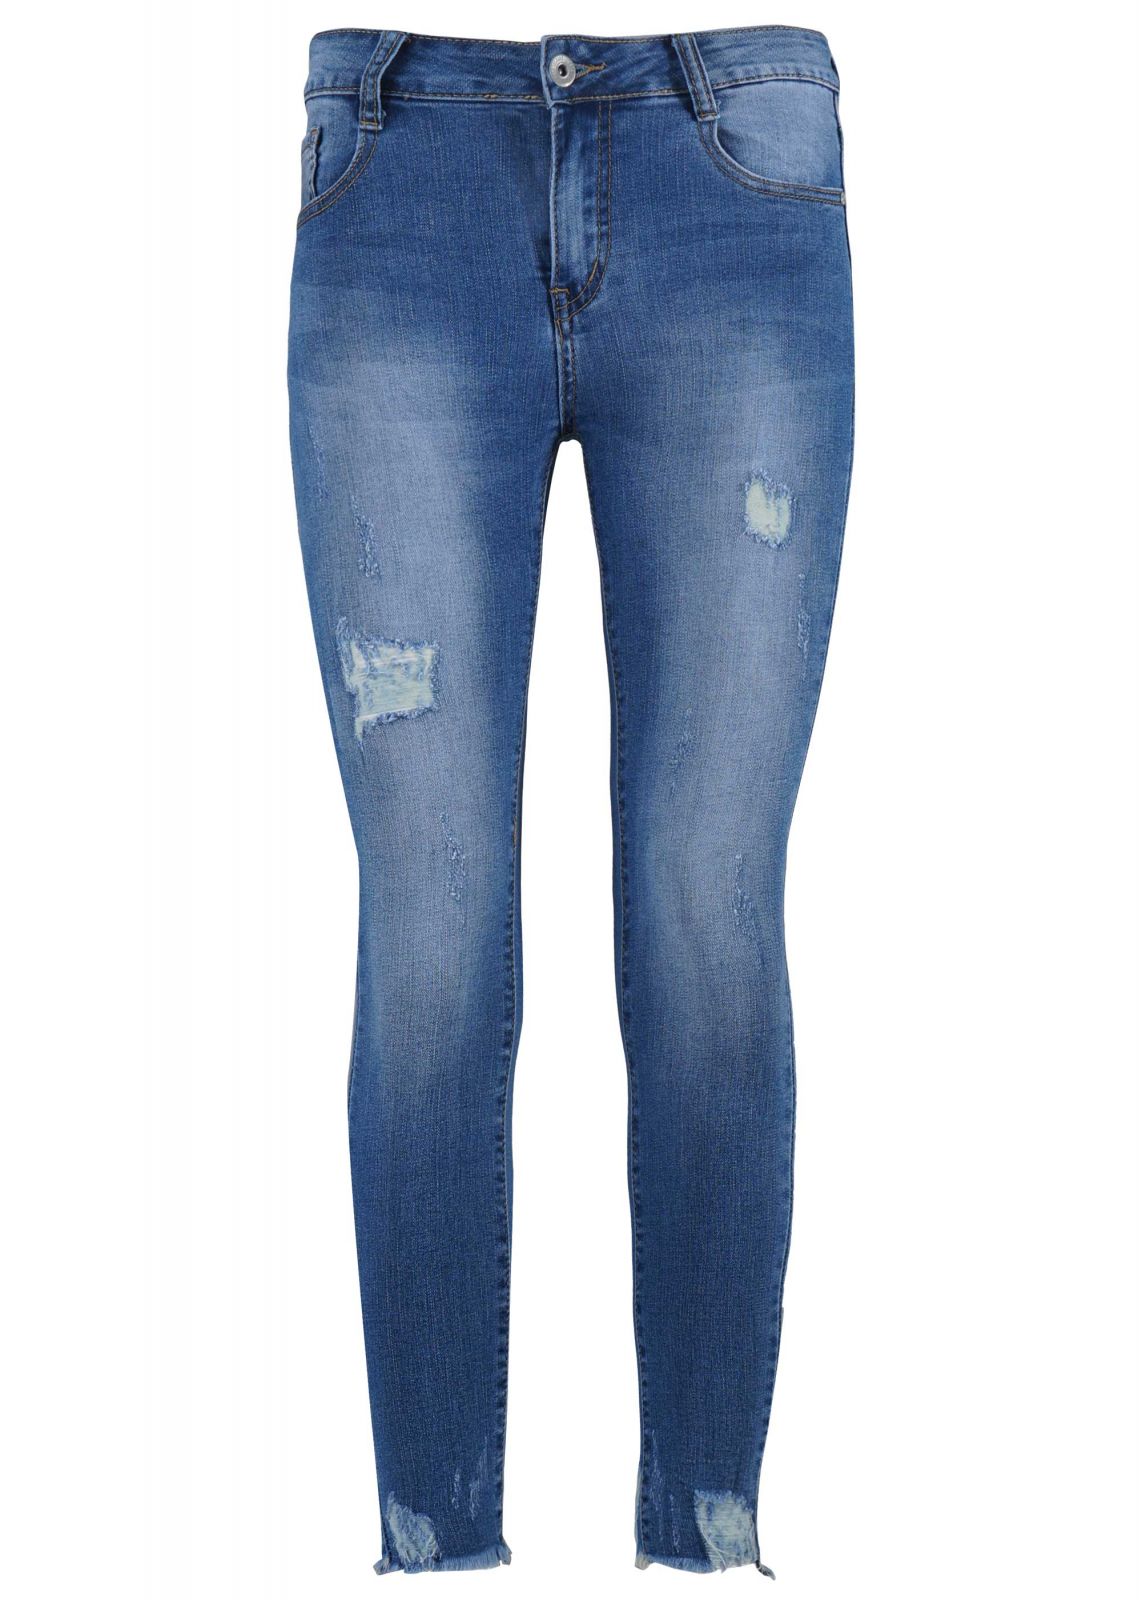 Γυναικείο παντελόνι jean skinny ψηλόμεσο ελαστικό. Denim Collection